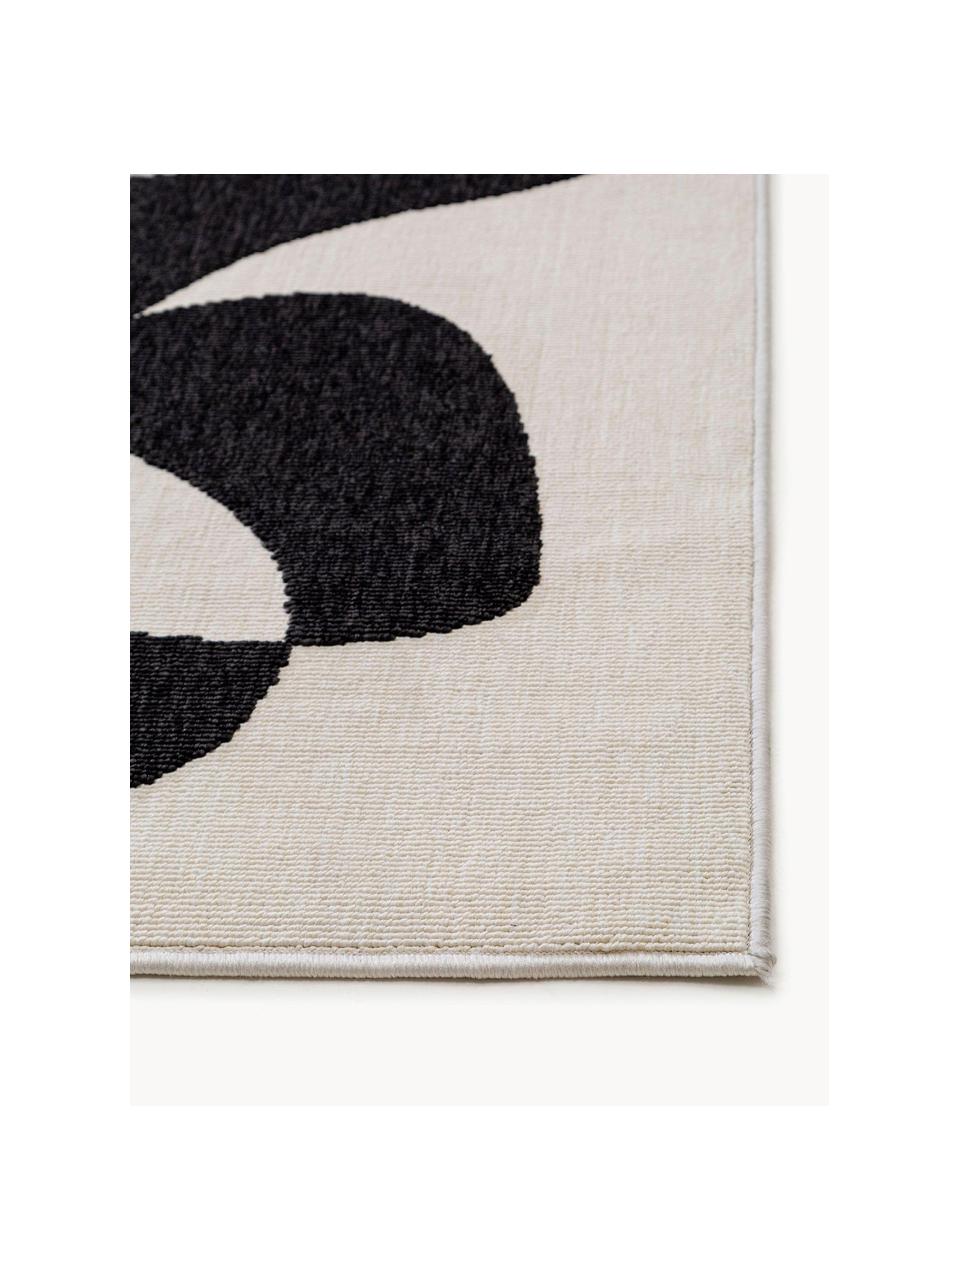 Interiérový/exteriérový koberec Taro, 100 % polypropylen, Černá, tlumeně bílá, Š 80 cm, D 150 cm (velikost XS)